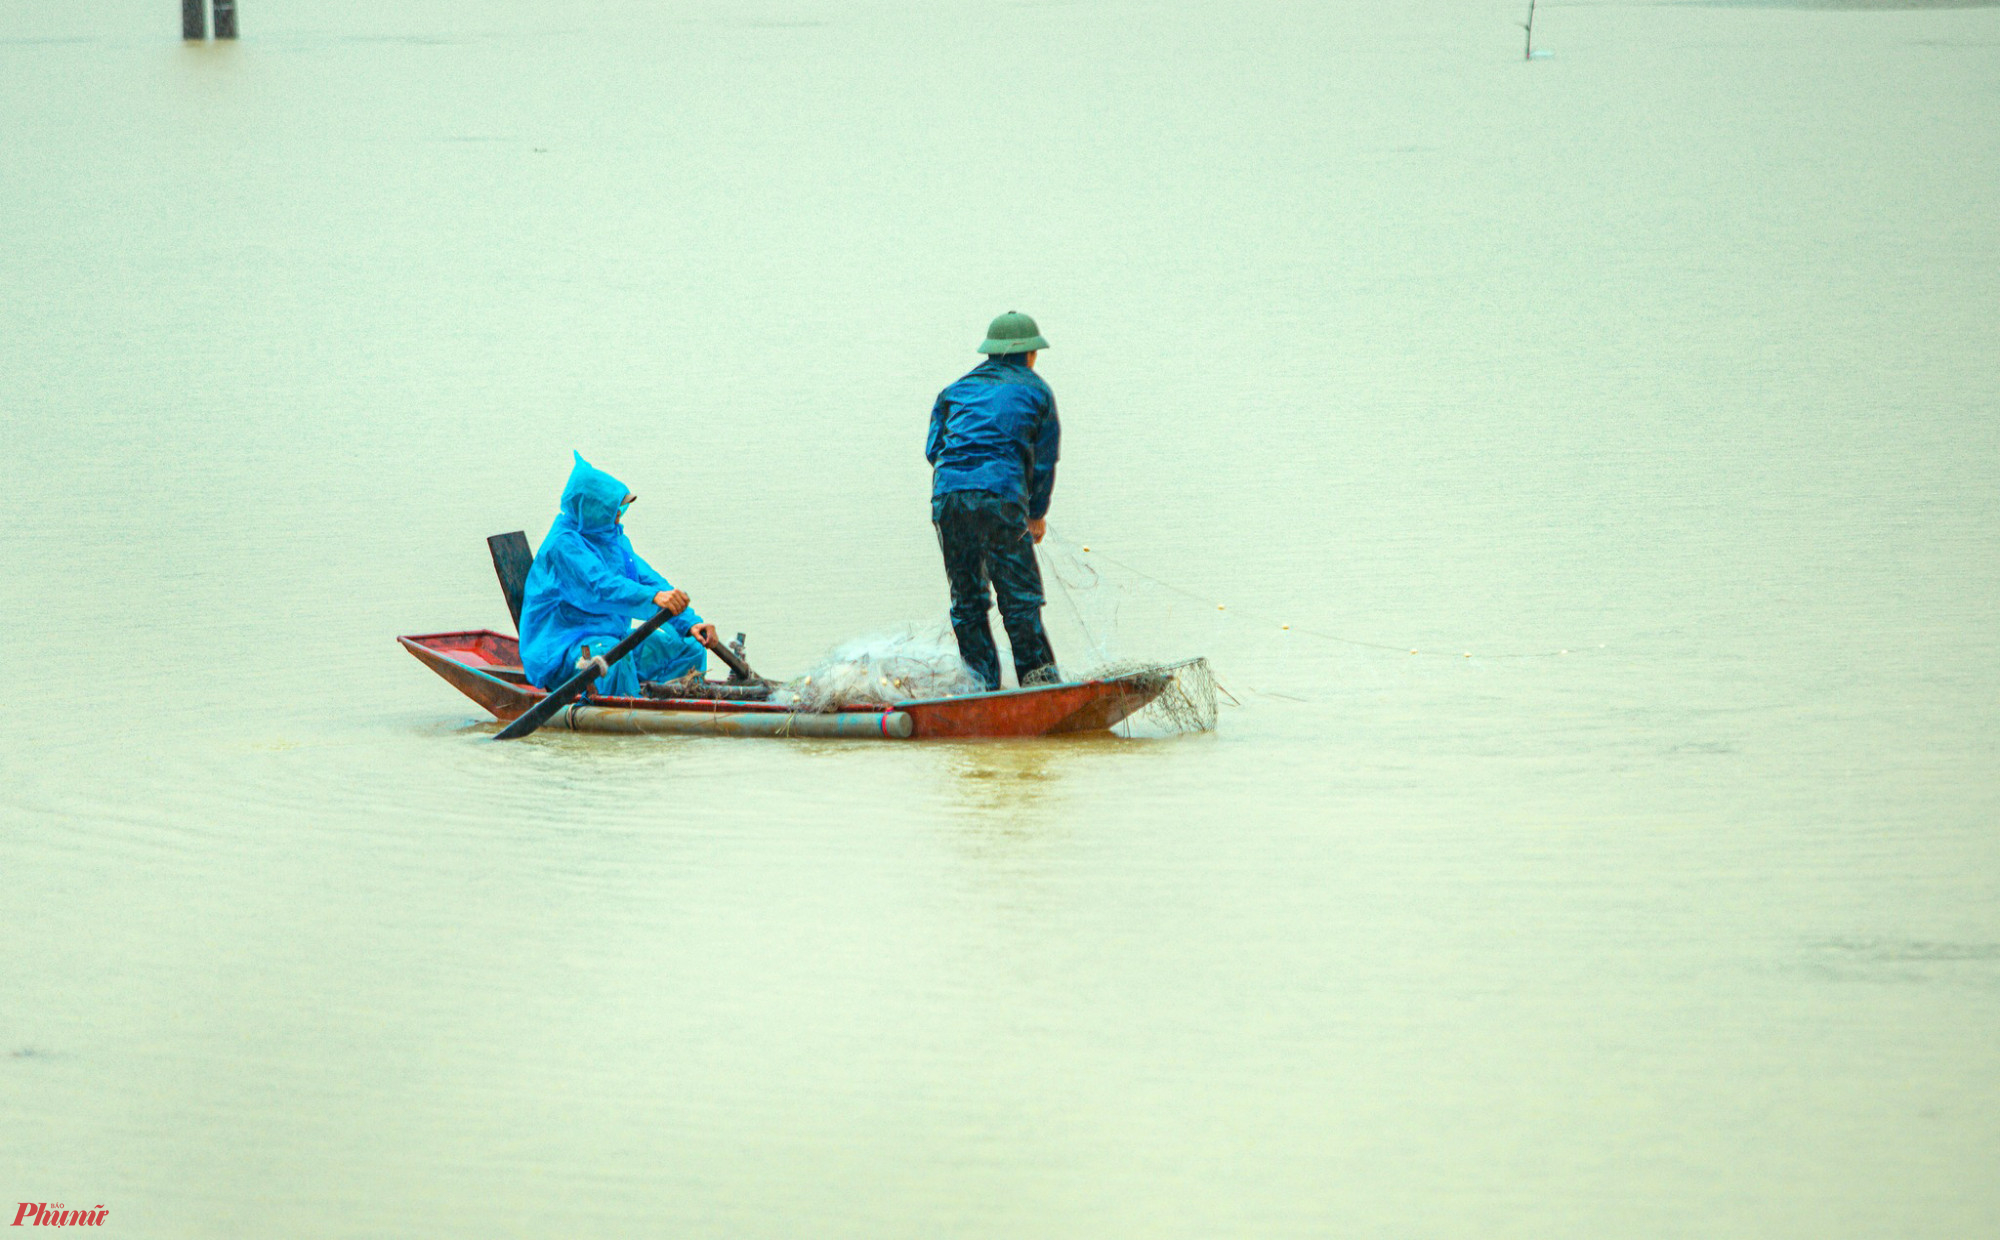 Trong 2 ngày qua, tại Nghệ An đã có 2 vụ lật thuyền đánh cá khiến 3 người bị lũ cuốn trôi. Chỉ có 1 trong số 3 người này may mắn bơi được vào bờ nên thoát nạn.